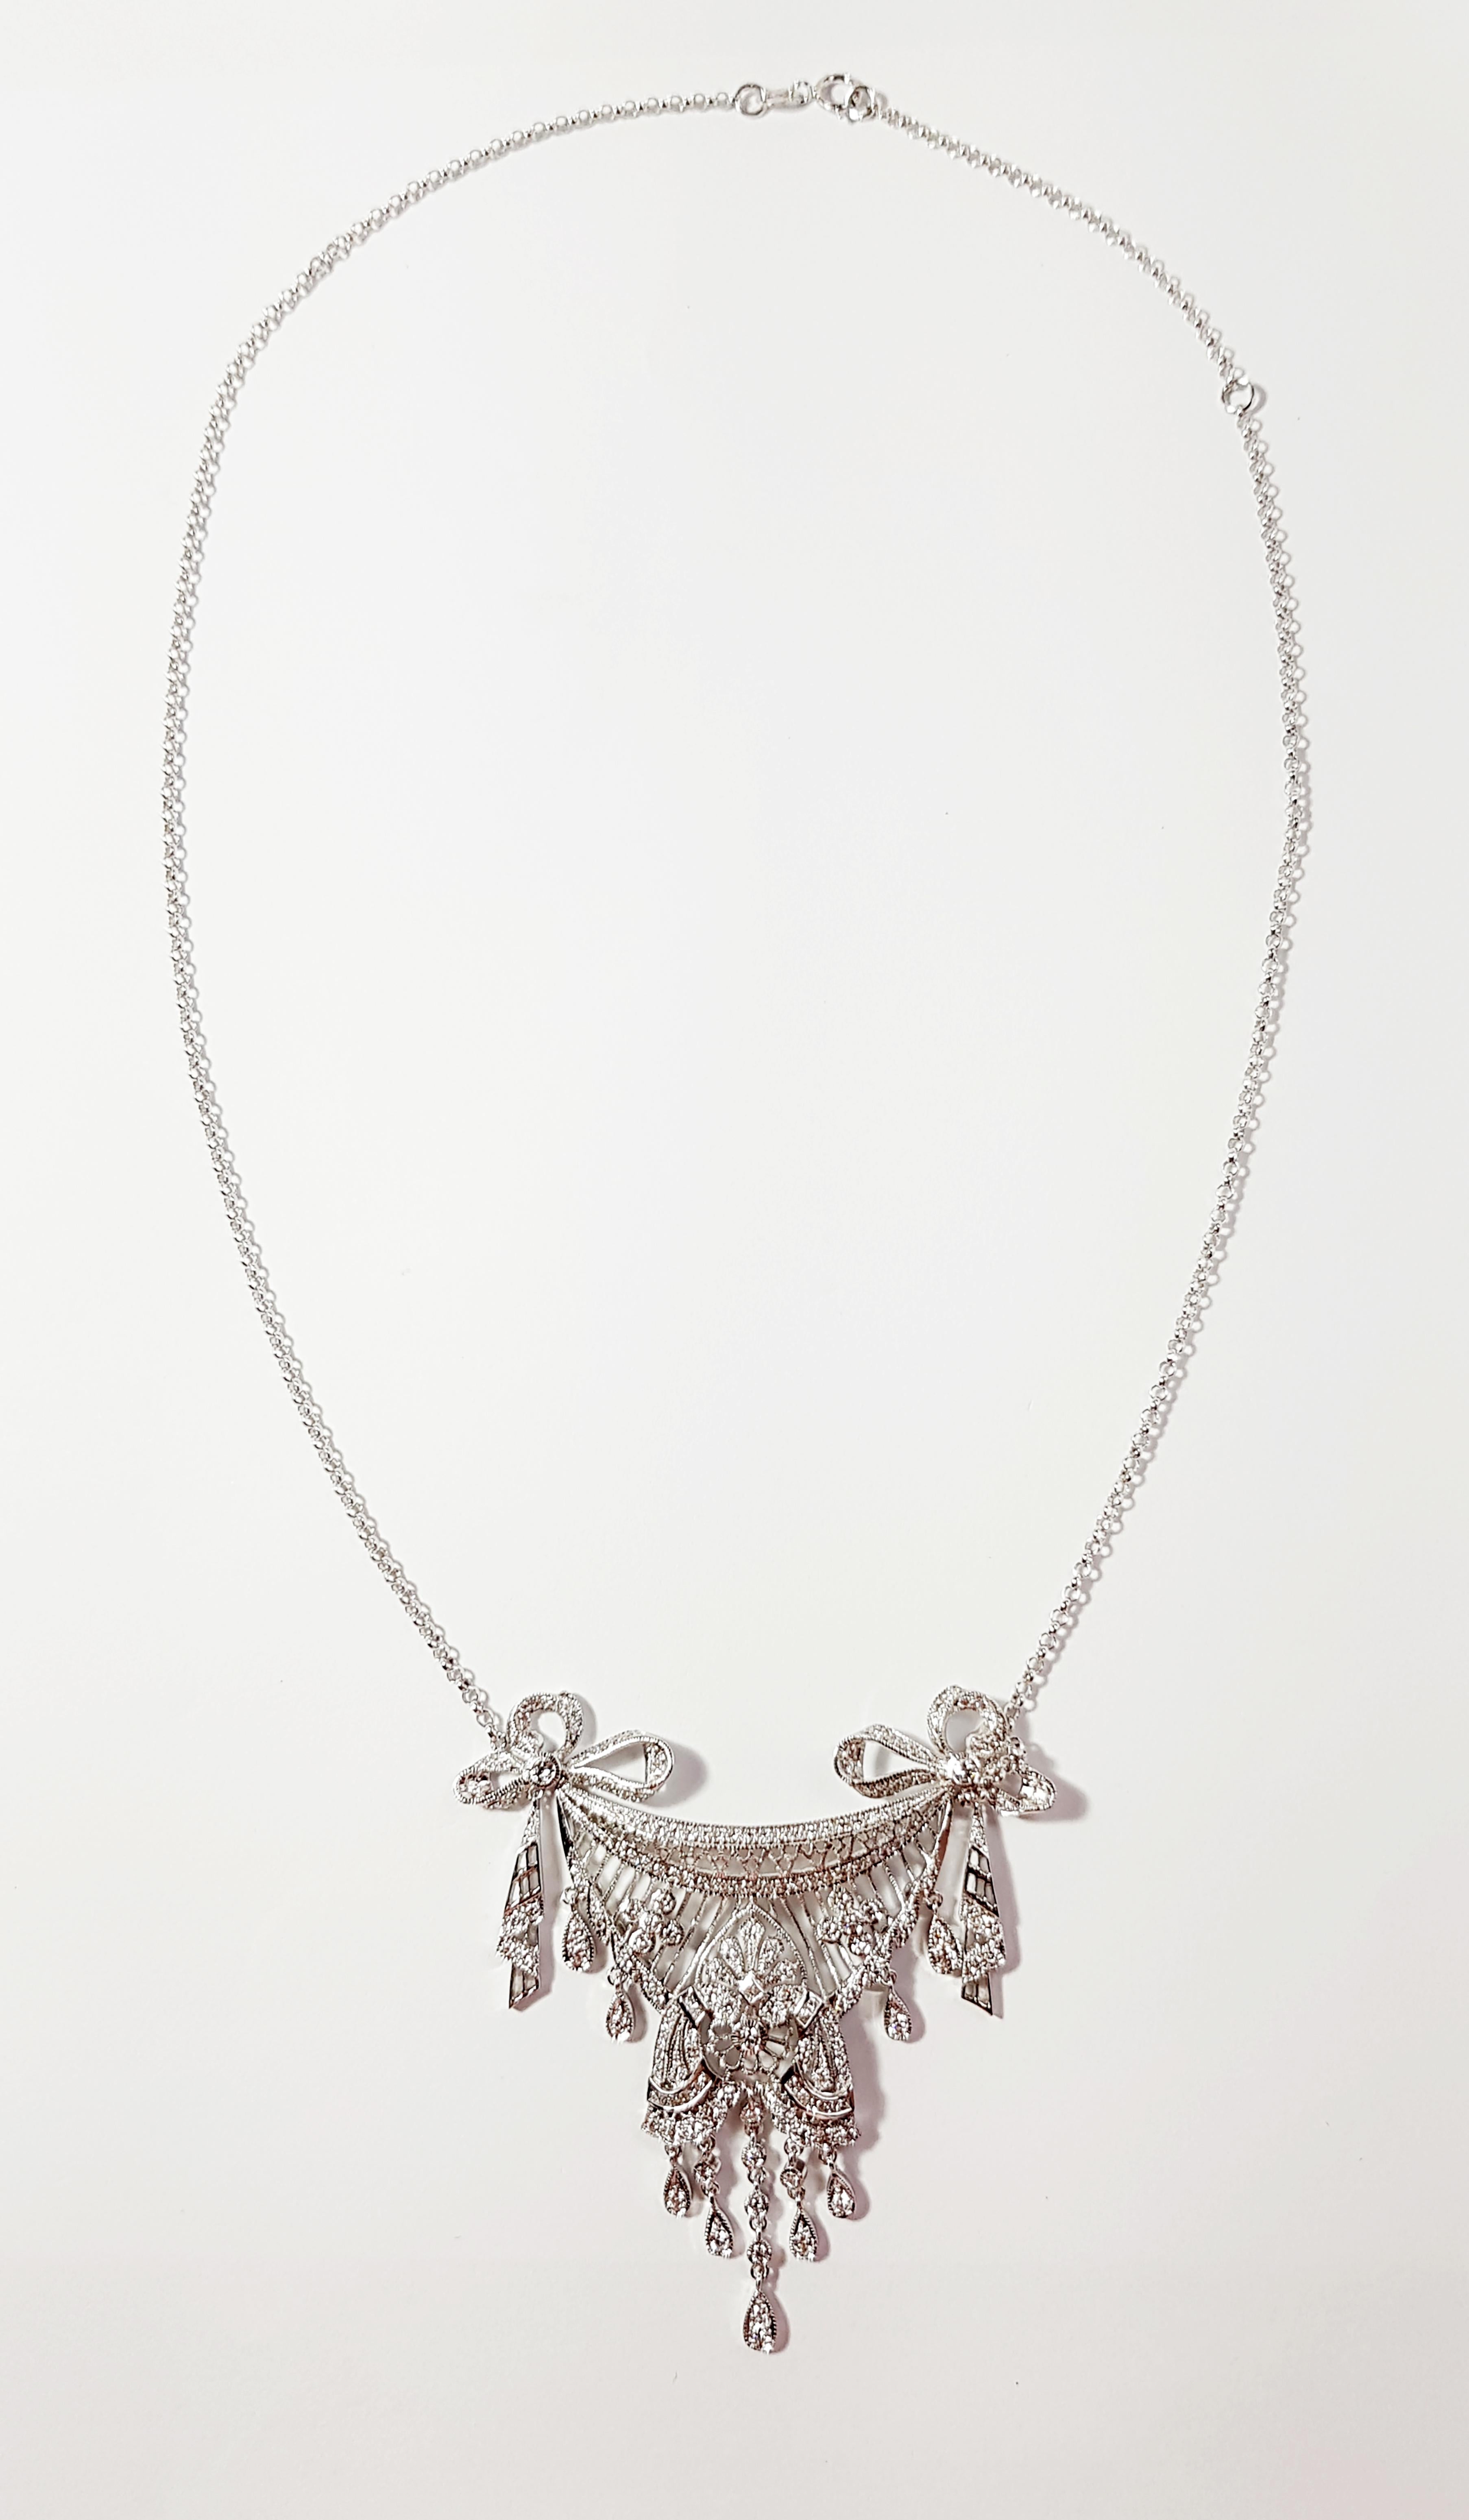 Diamant-Halskette mit 1,59 Karat in 18 Karat Weißgoldfassung

Breite:  5.6 cm 
Länge: 45,3 cm
Gesamtgewicht: 16,56 Gramm

